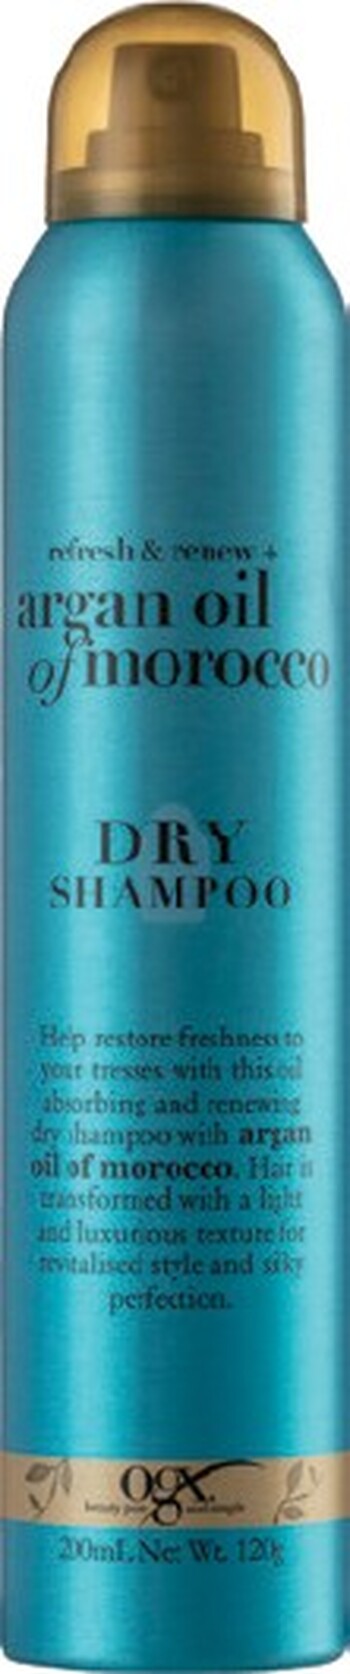 OGX Argan Oil Of Morocco Dry Shampoo 200ml